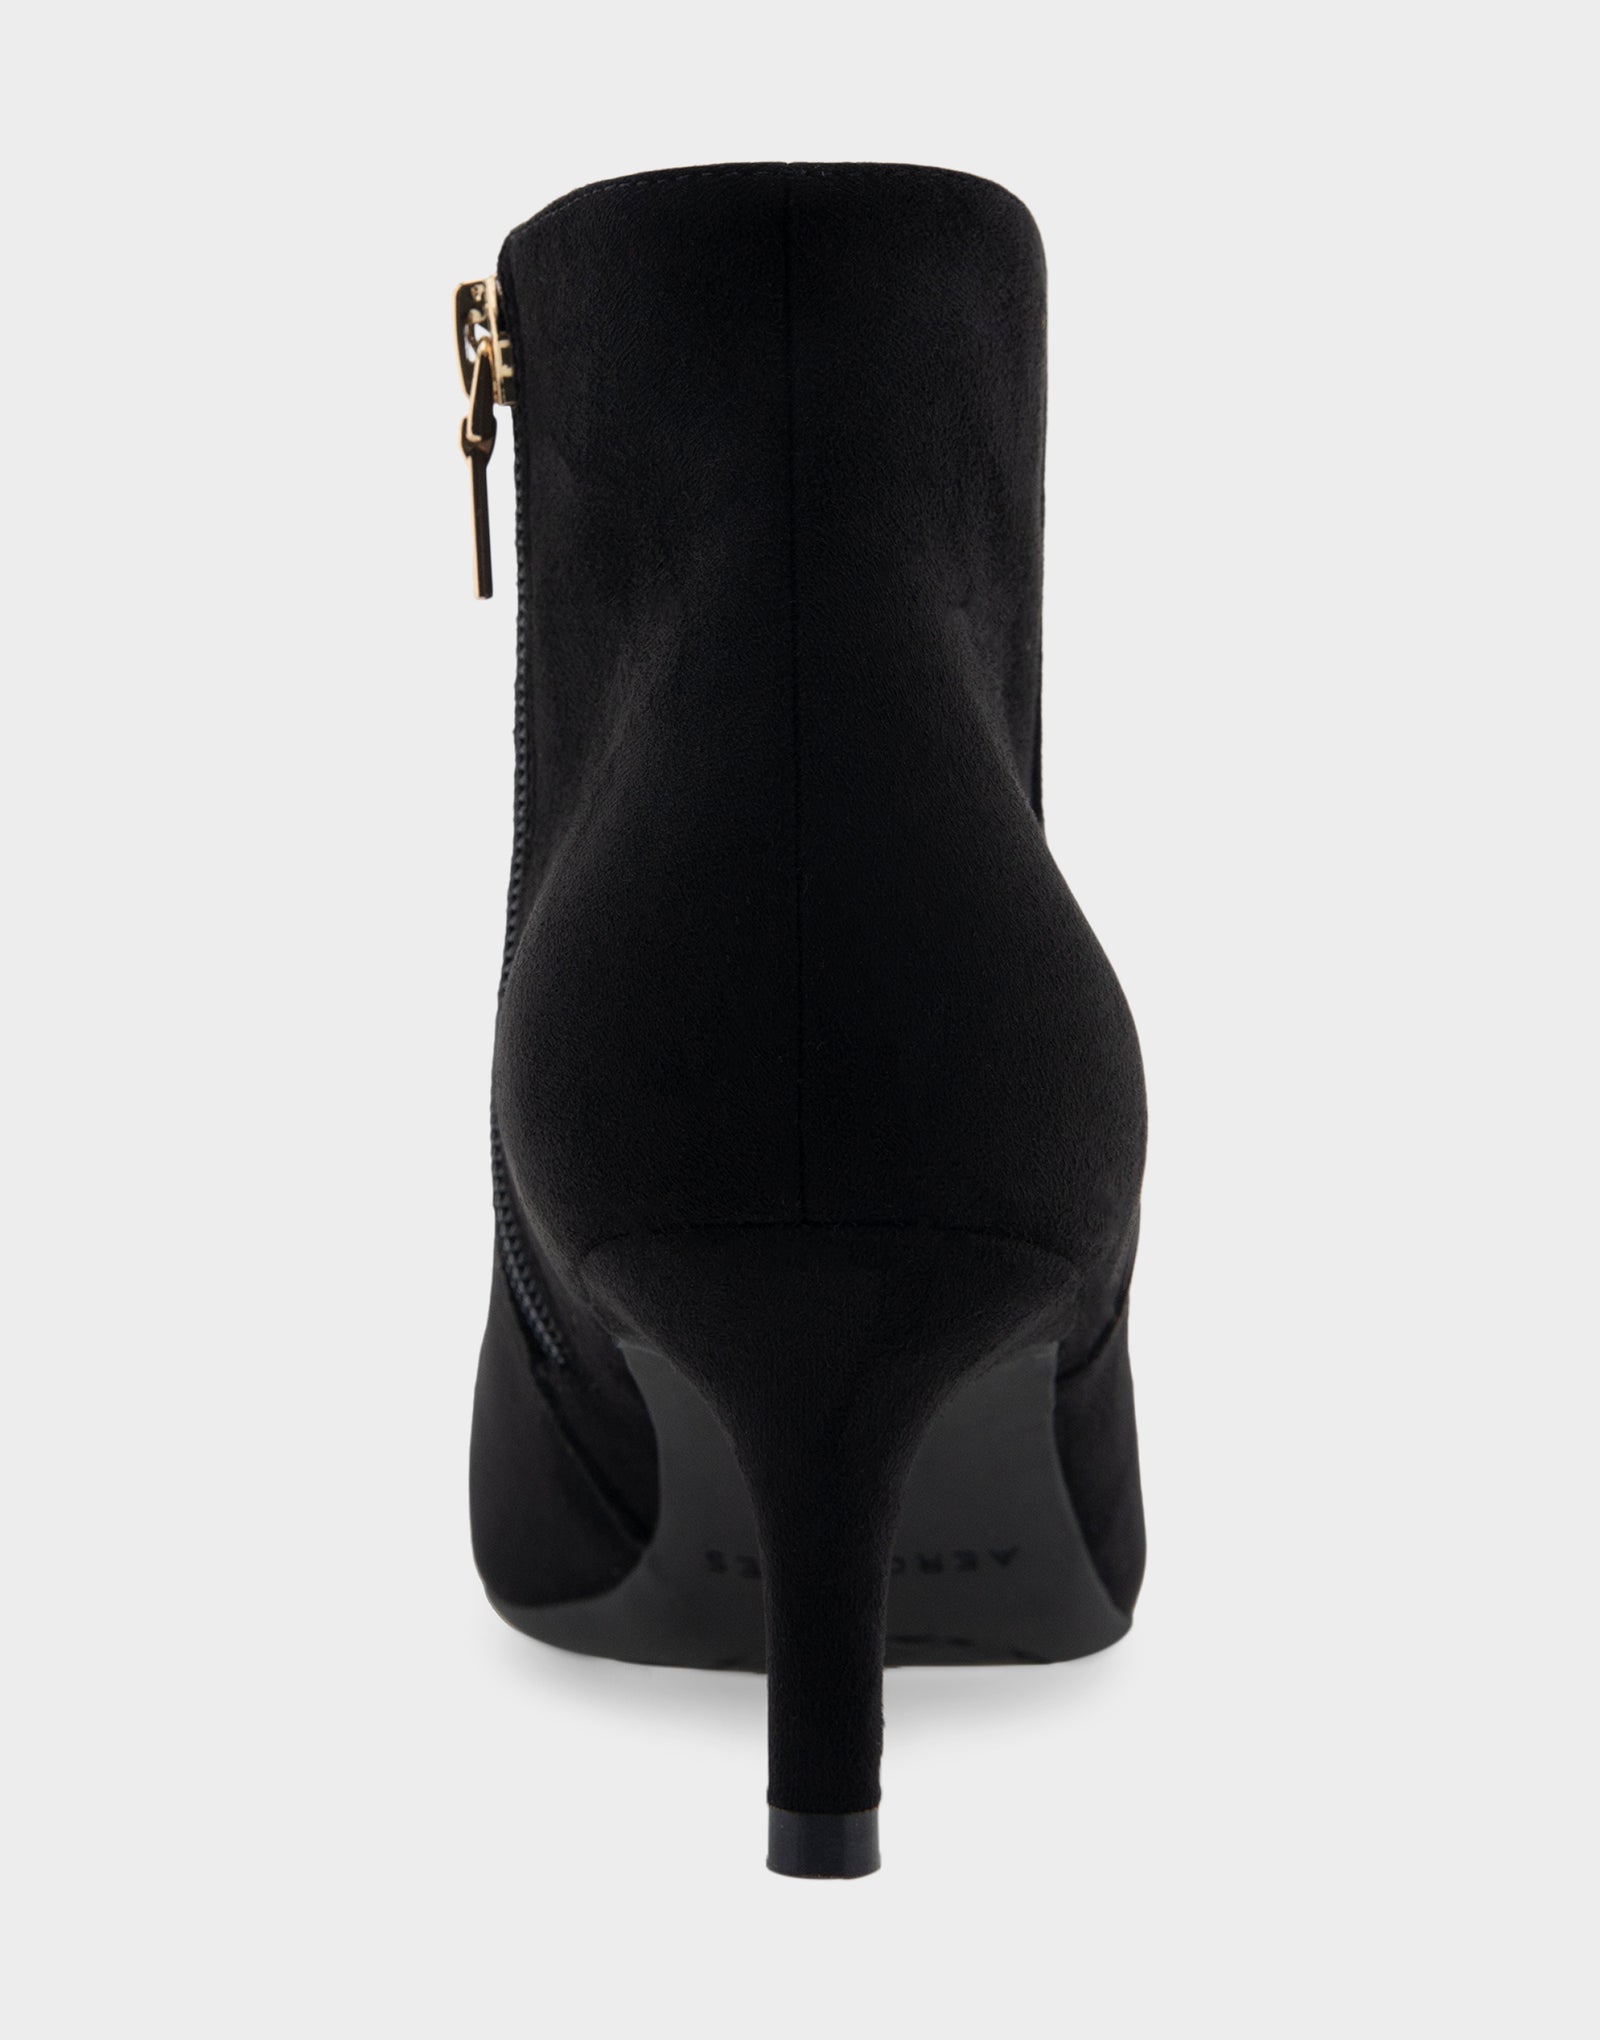 Women's Kitten Heel Ankle Boot in Black